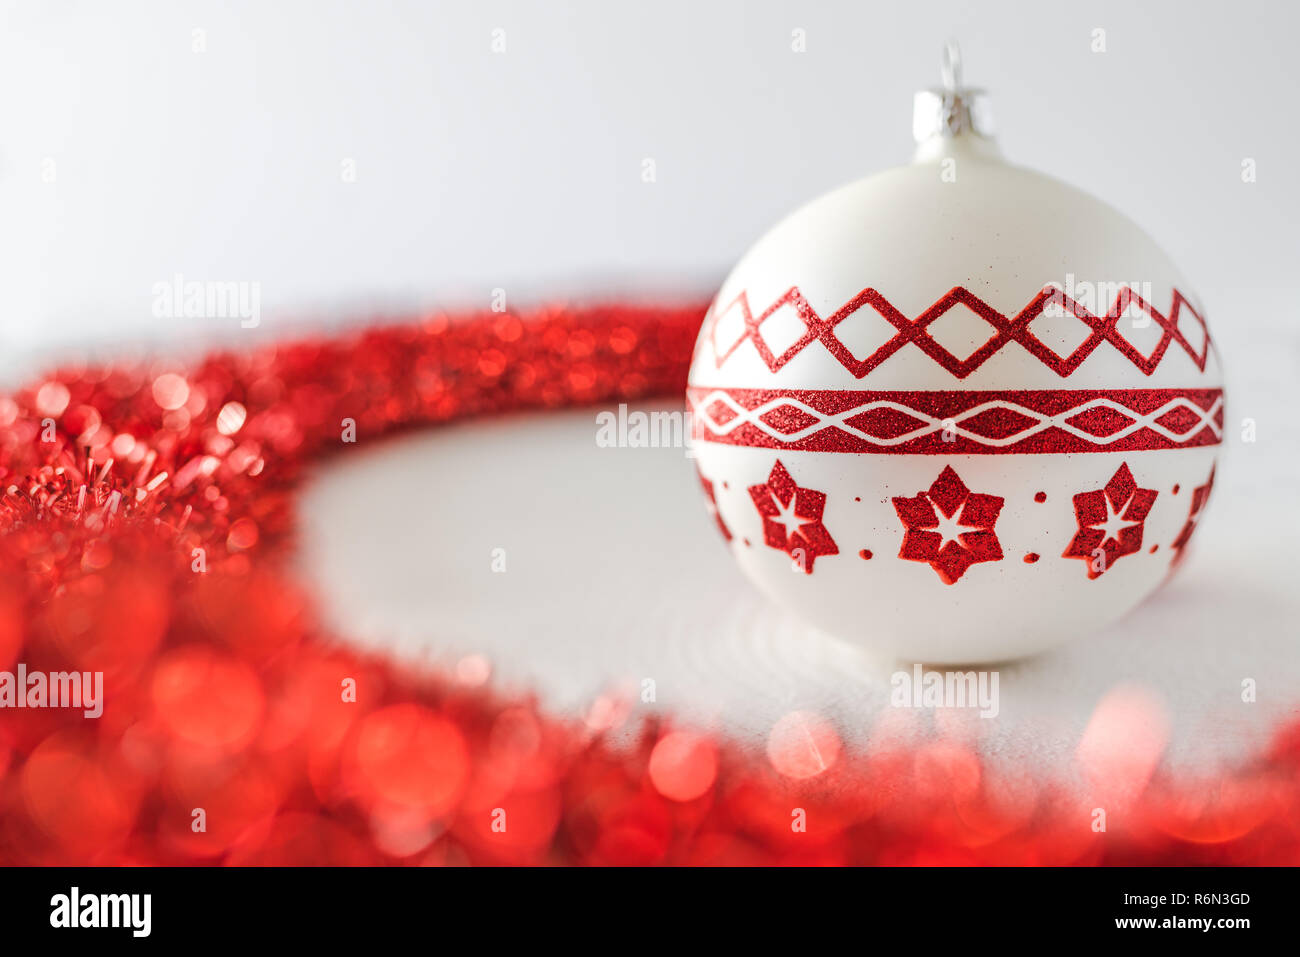 Sfondi Natalizi Bianchi.Decorazioni Di Natale Bel Rosso E Bianco A Sfere Di Vetro E Nastro Rosso Su Sfondo Bianco Foto Stock Alamy